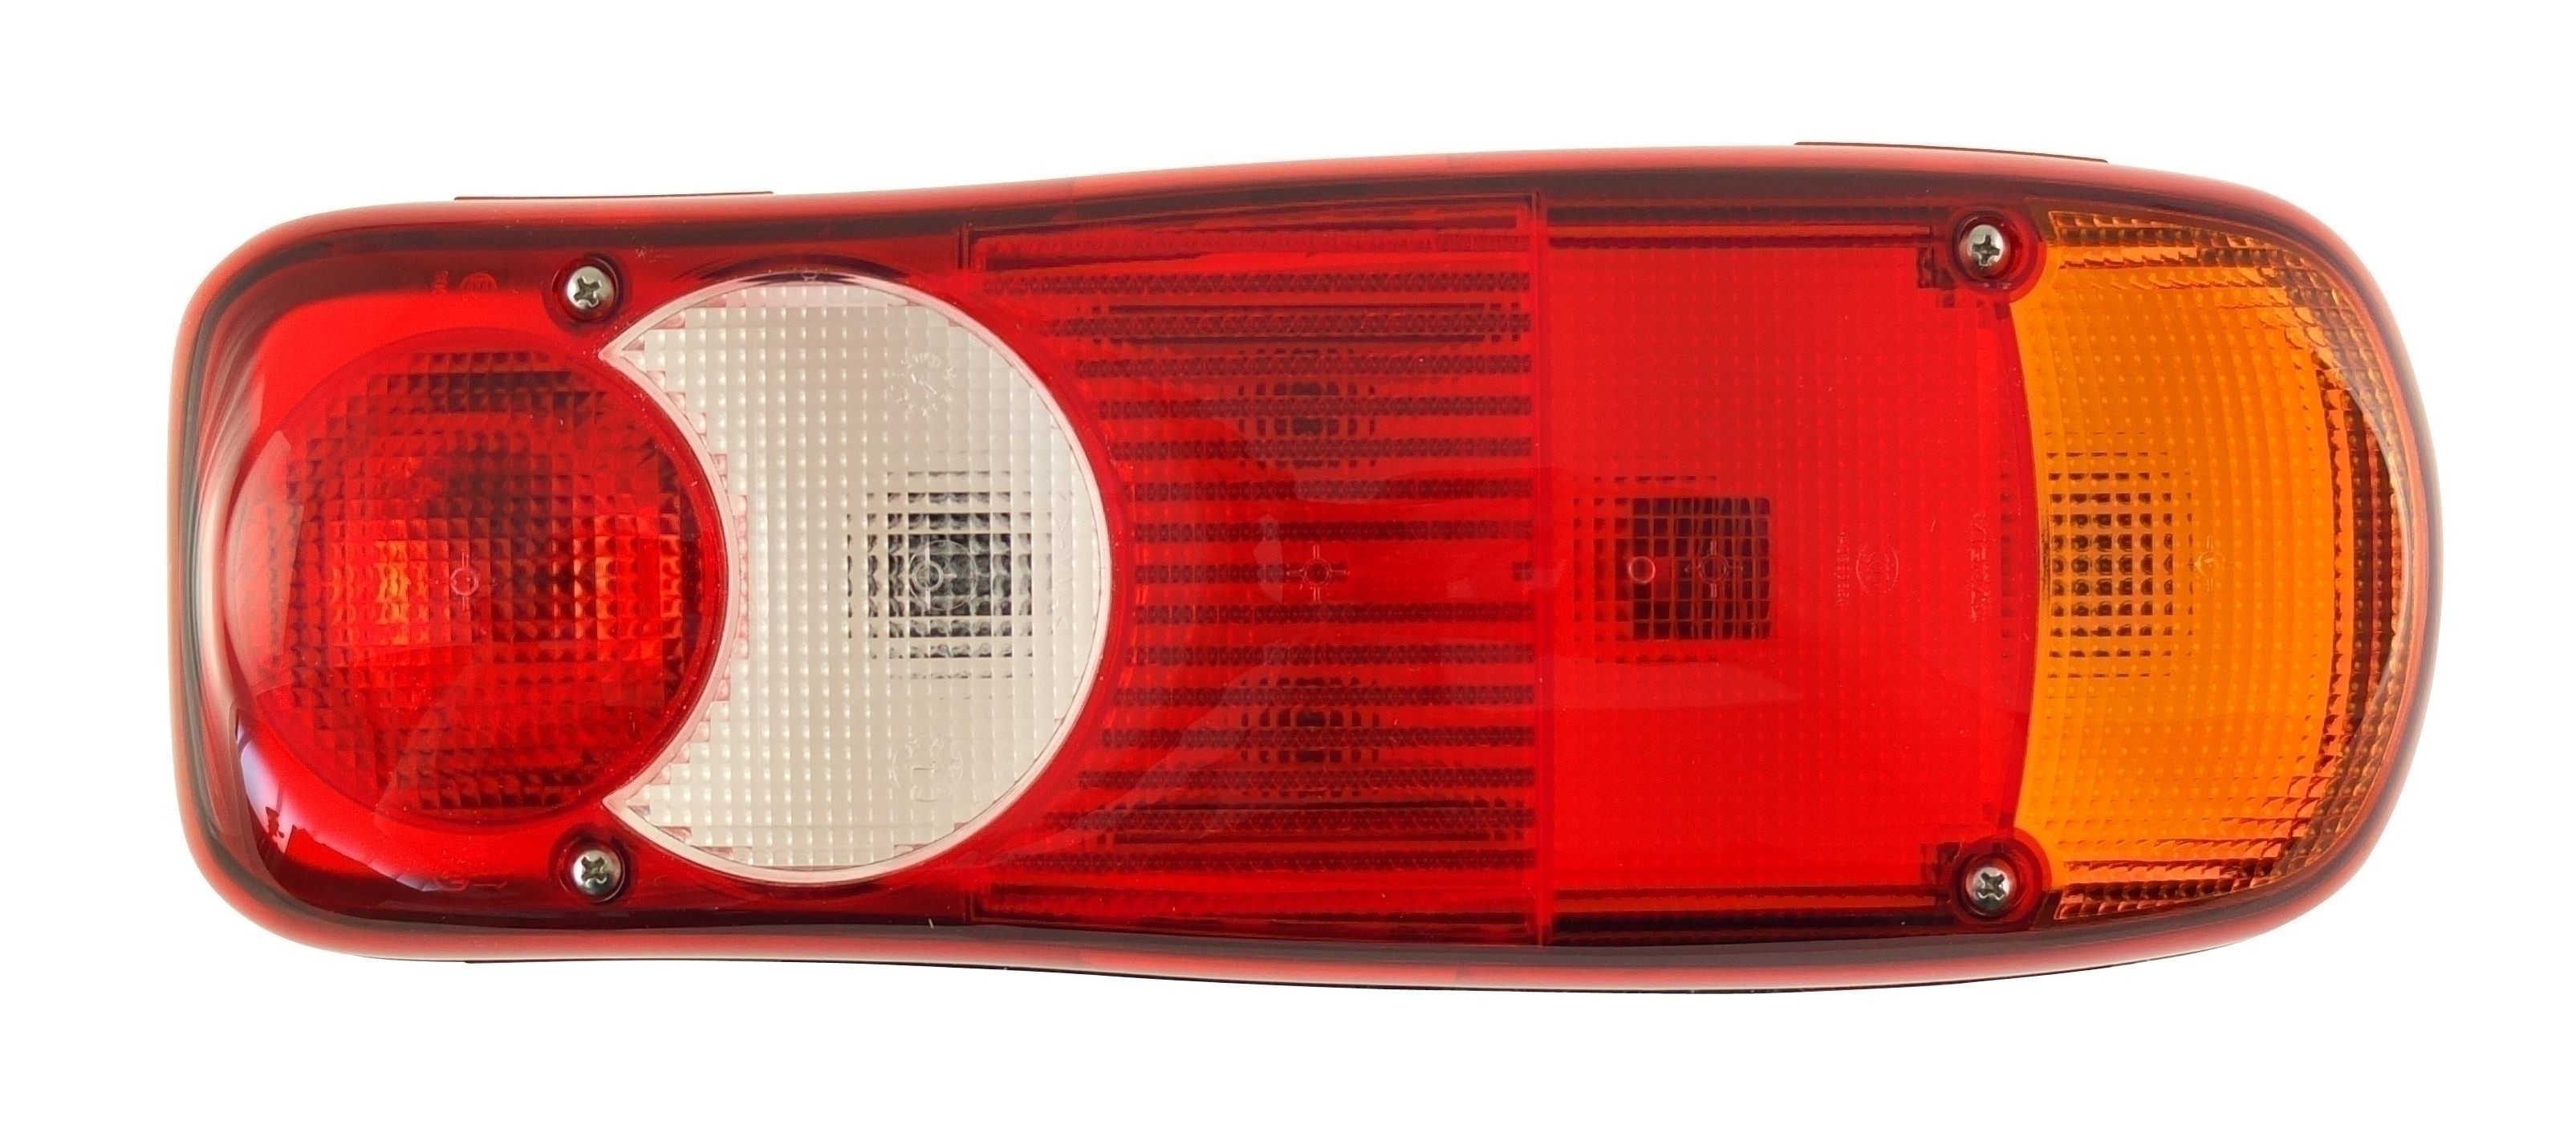 Zubehör und Teile für Citroën Nutzfahrzeuge - Lights and